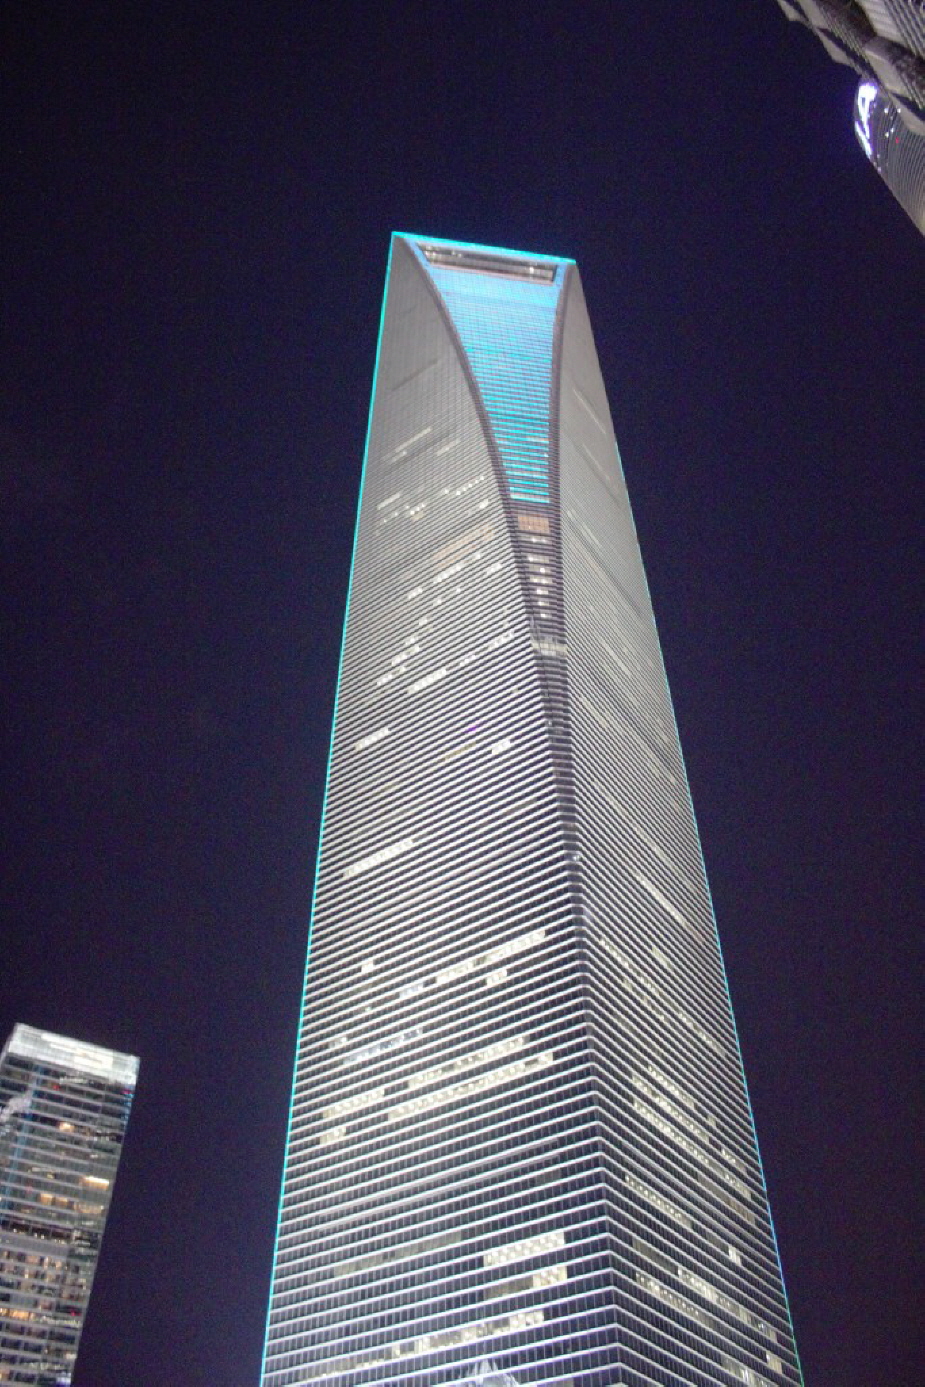 Der Flaschenöffner - das Shanghai World Financial Center (SWFC) - Der charakteristische Wolkenkratzer ist in der Skyline Shanghais leicht zu erkennen, zu sehr sticht die Form heraus, die an einen Flaschenöffner erinnert. Das Shanghai World Financial Cente